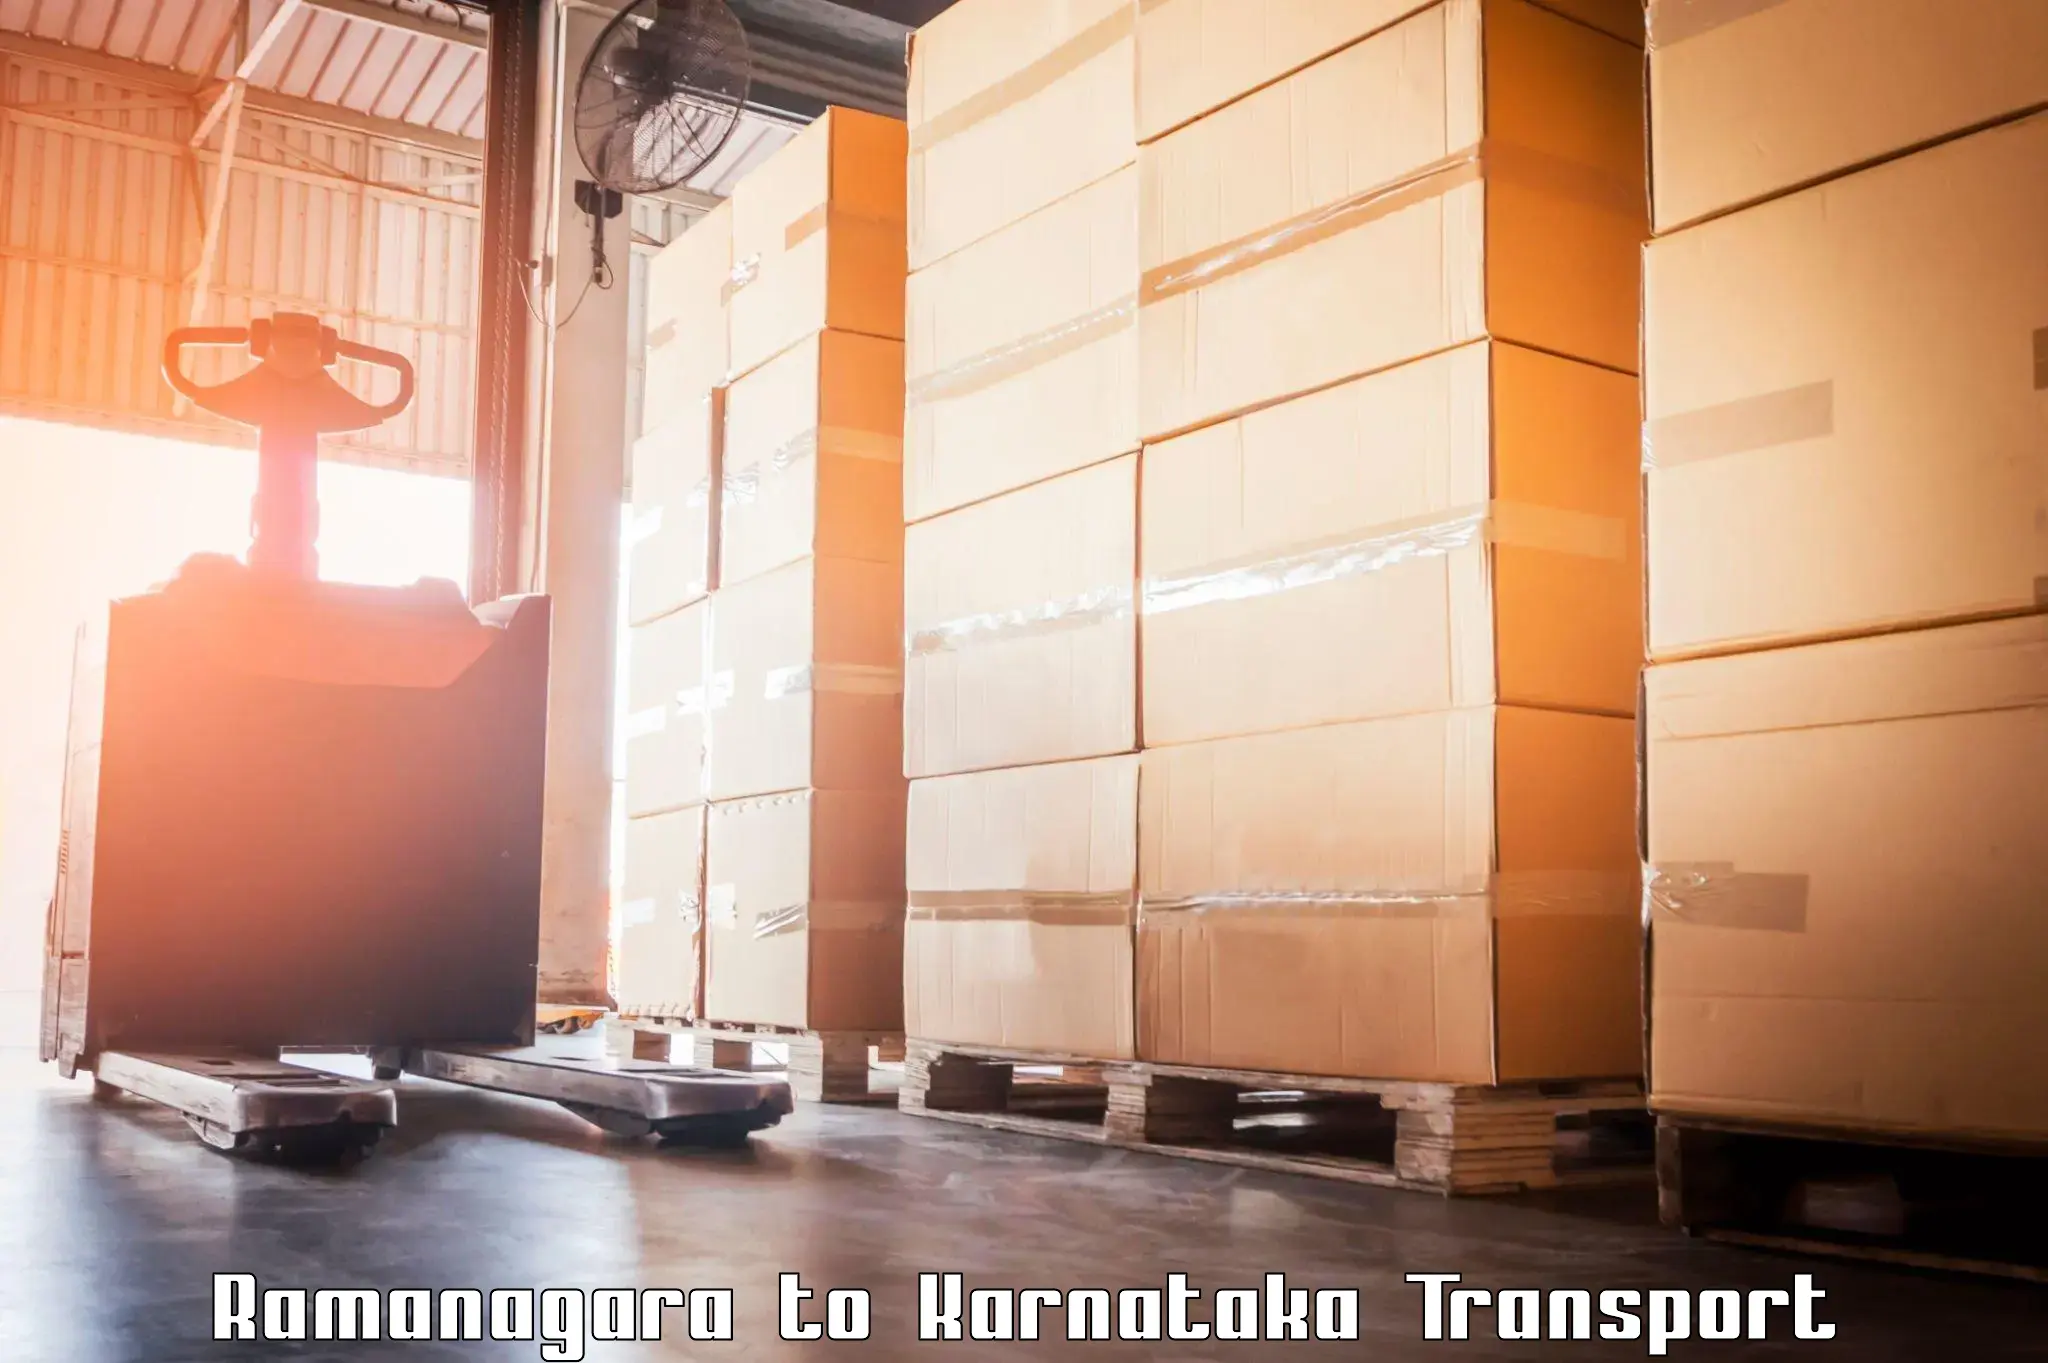 Cargo transportation services Ramanagara to Challakere